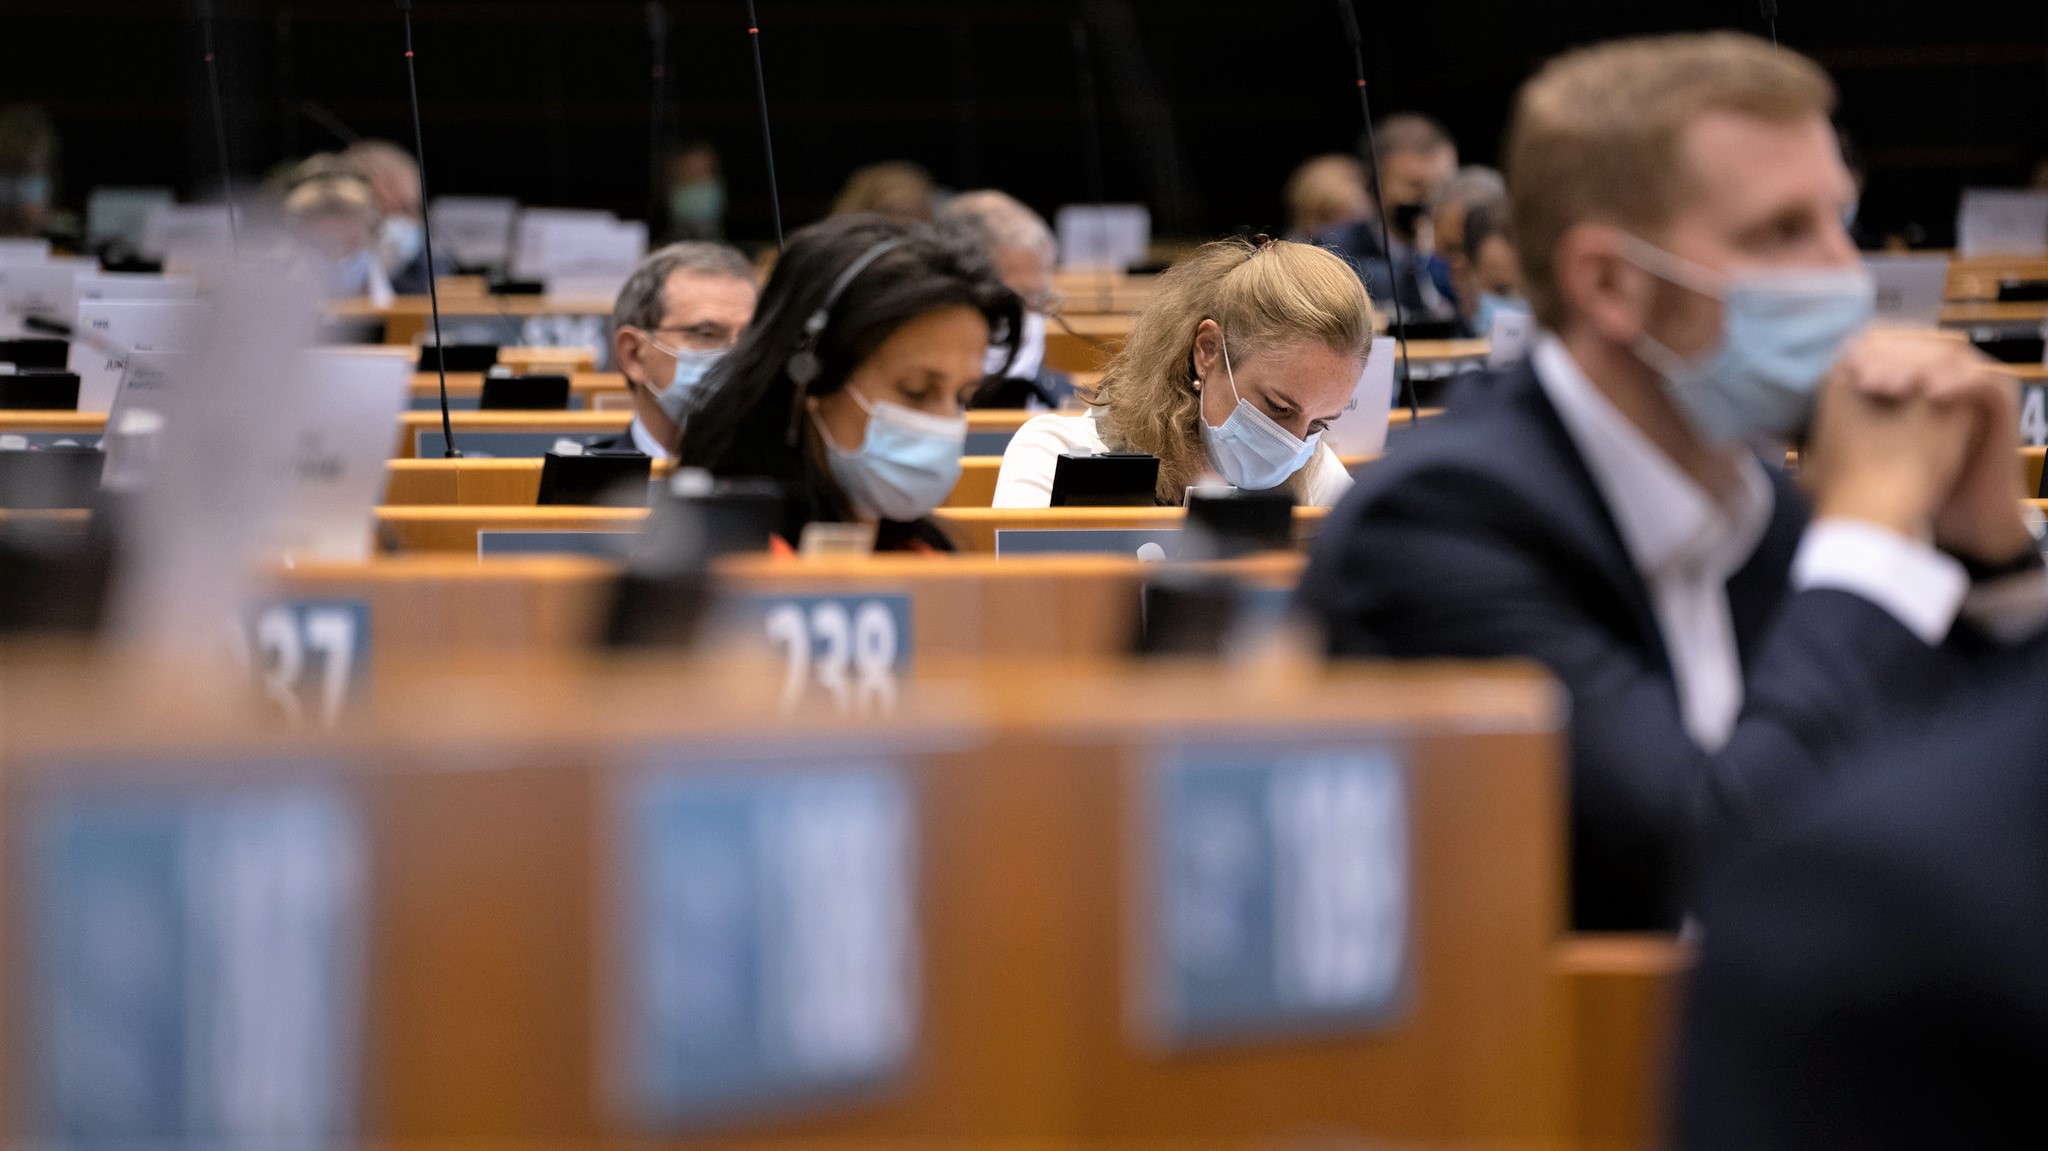 MEP'ere sidder med mundbind i Parlamentet